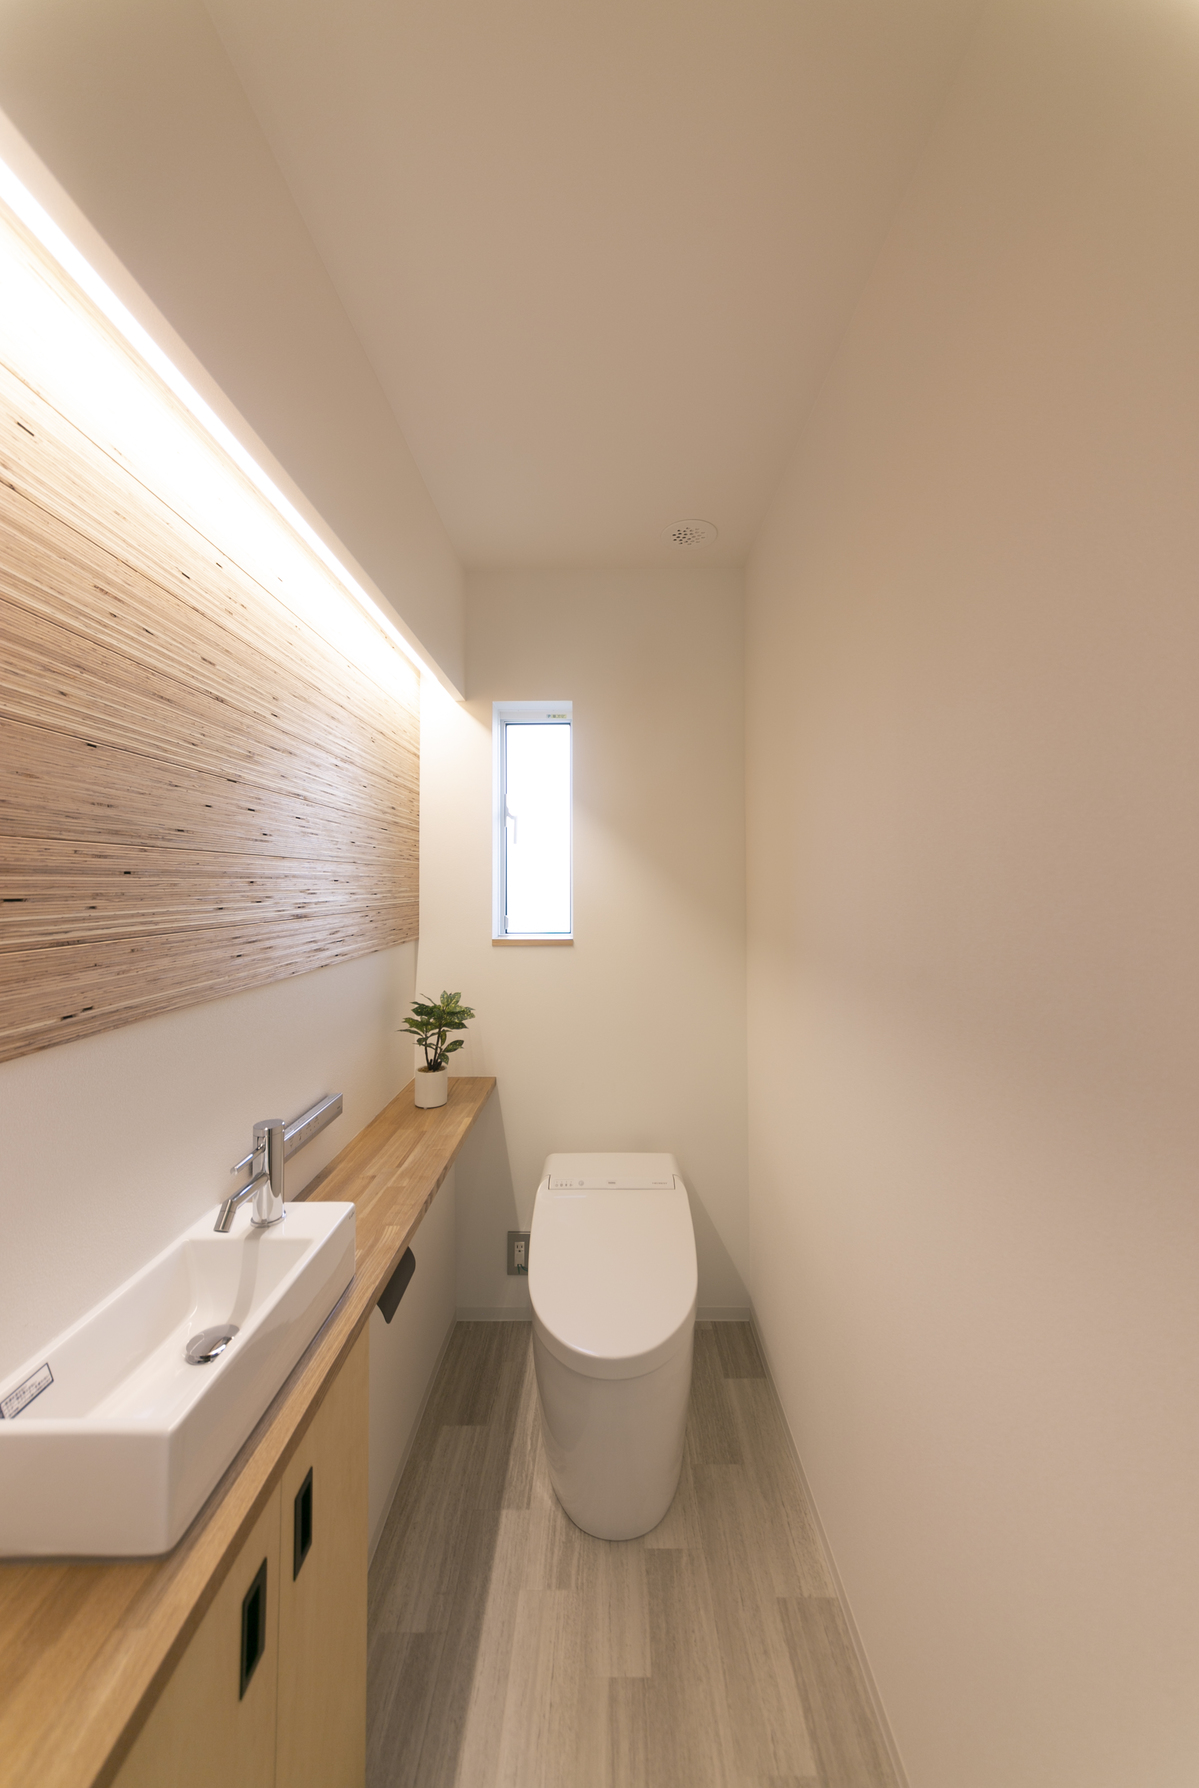 間接照明でおしゃれなトイレに ピース島根 島根県のおすすめハウスメーカー